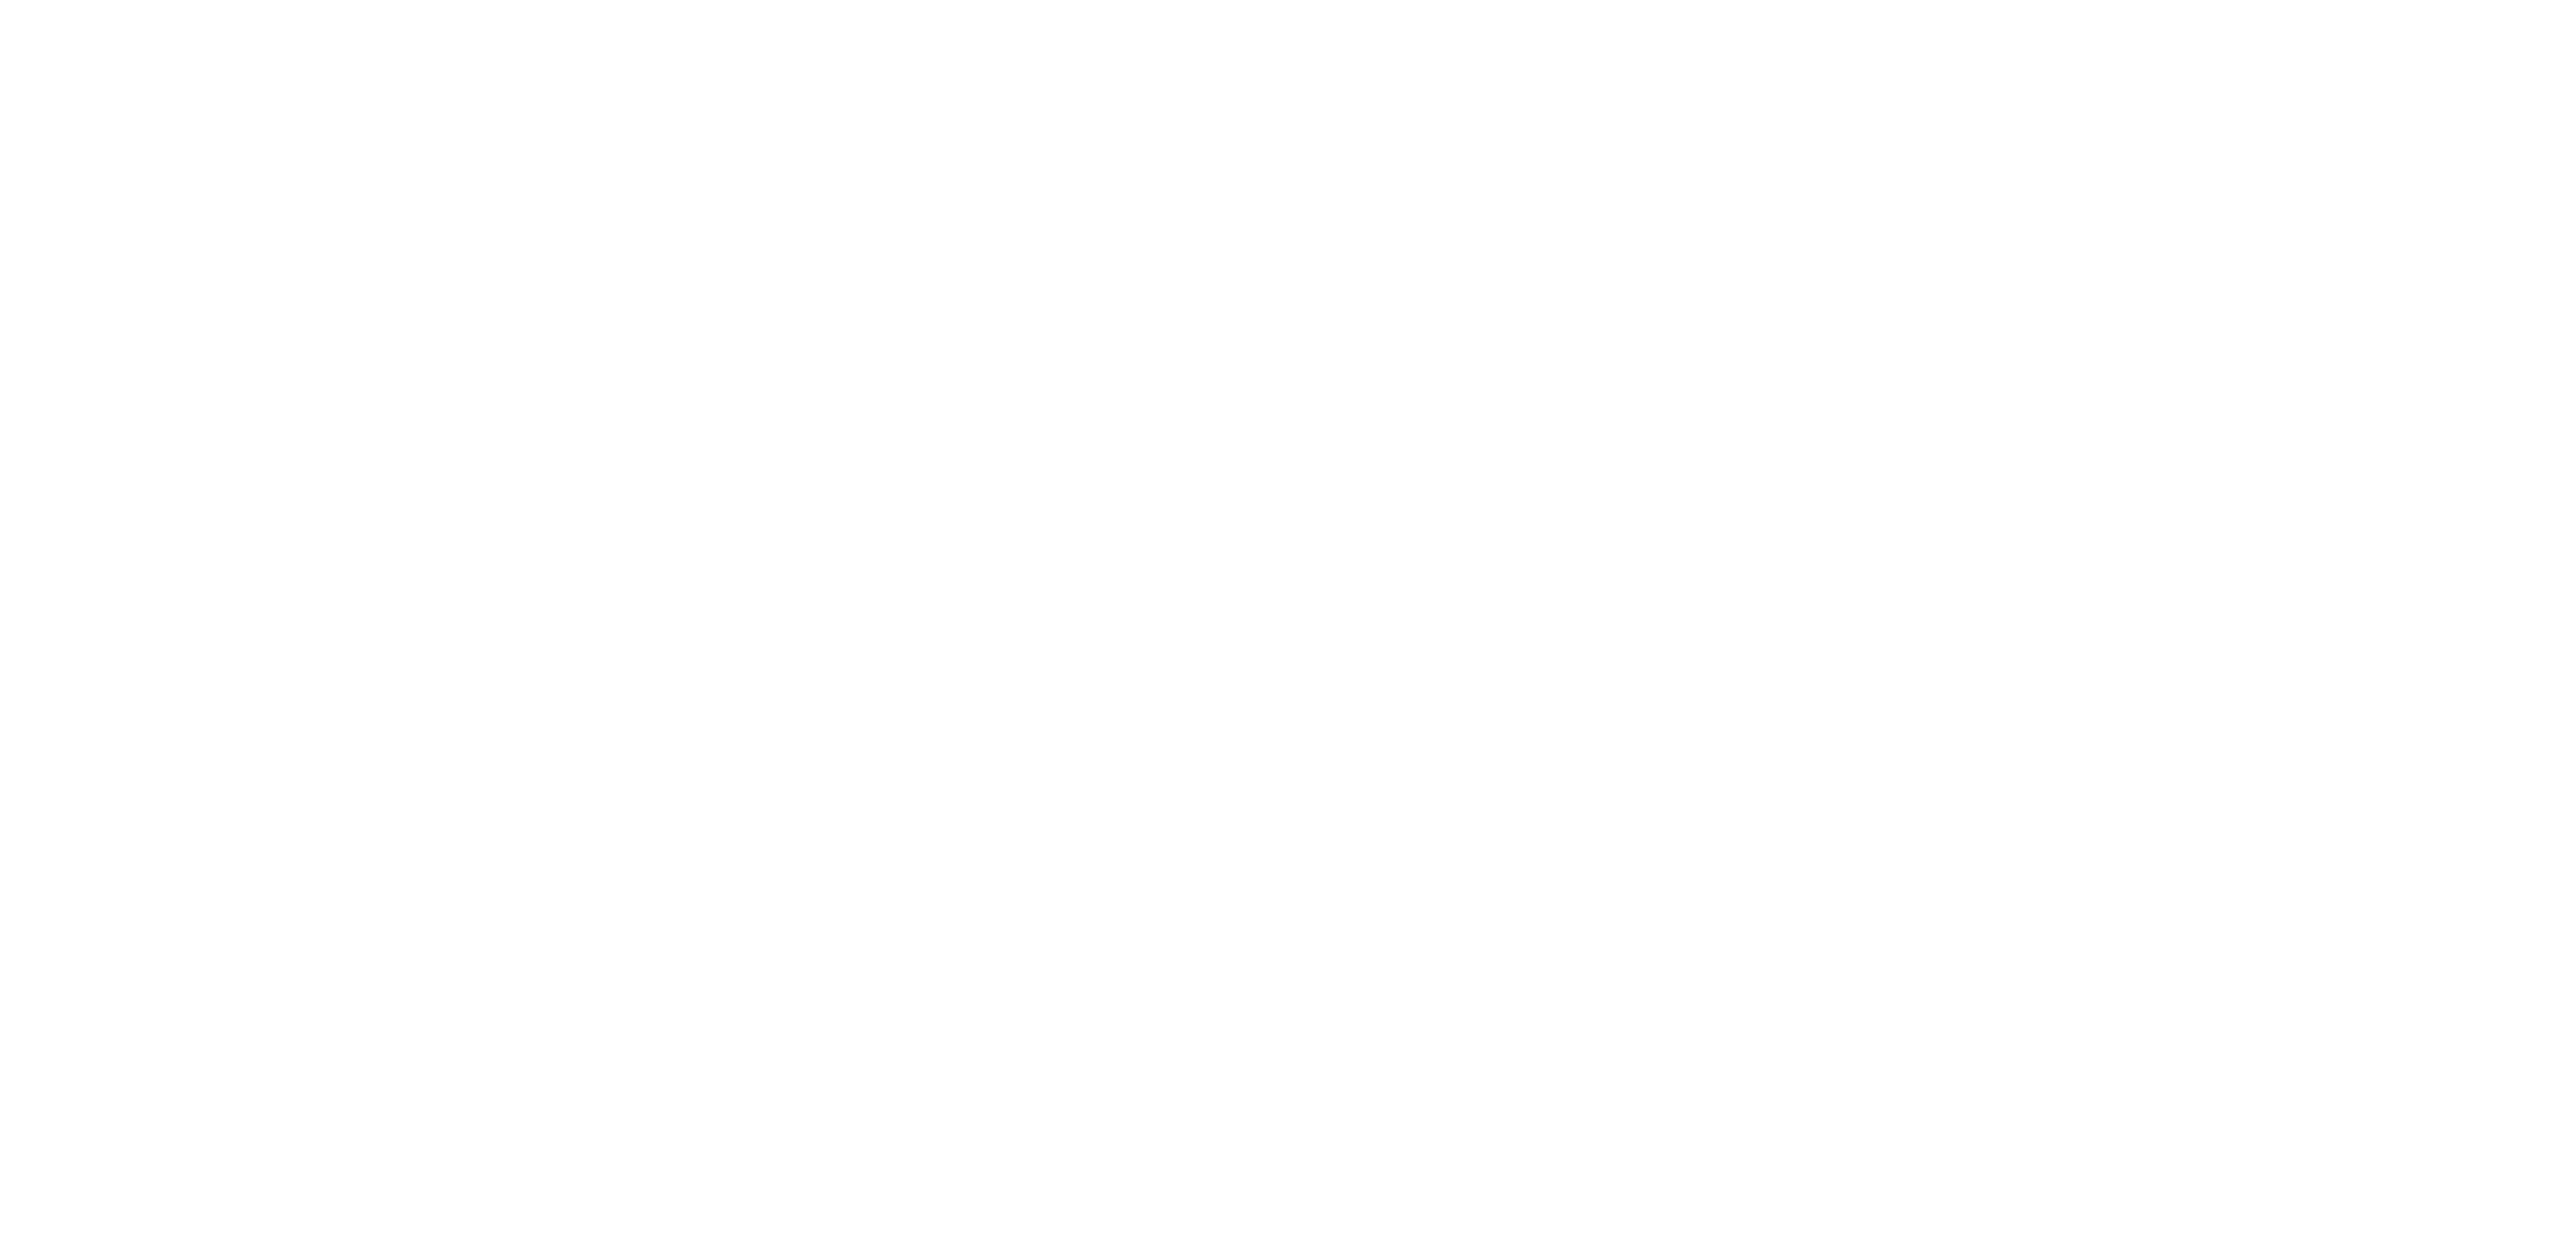 World Mission for Christ